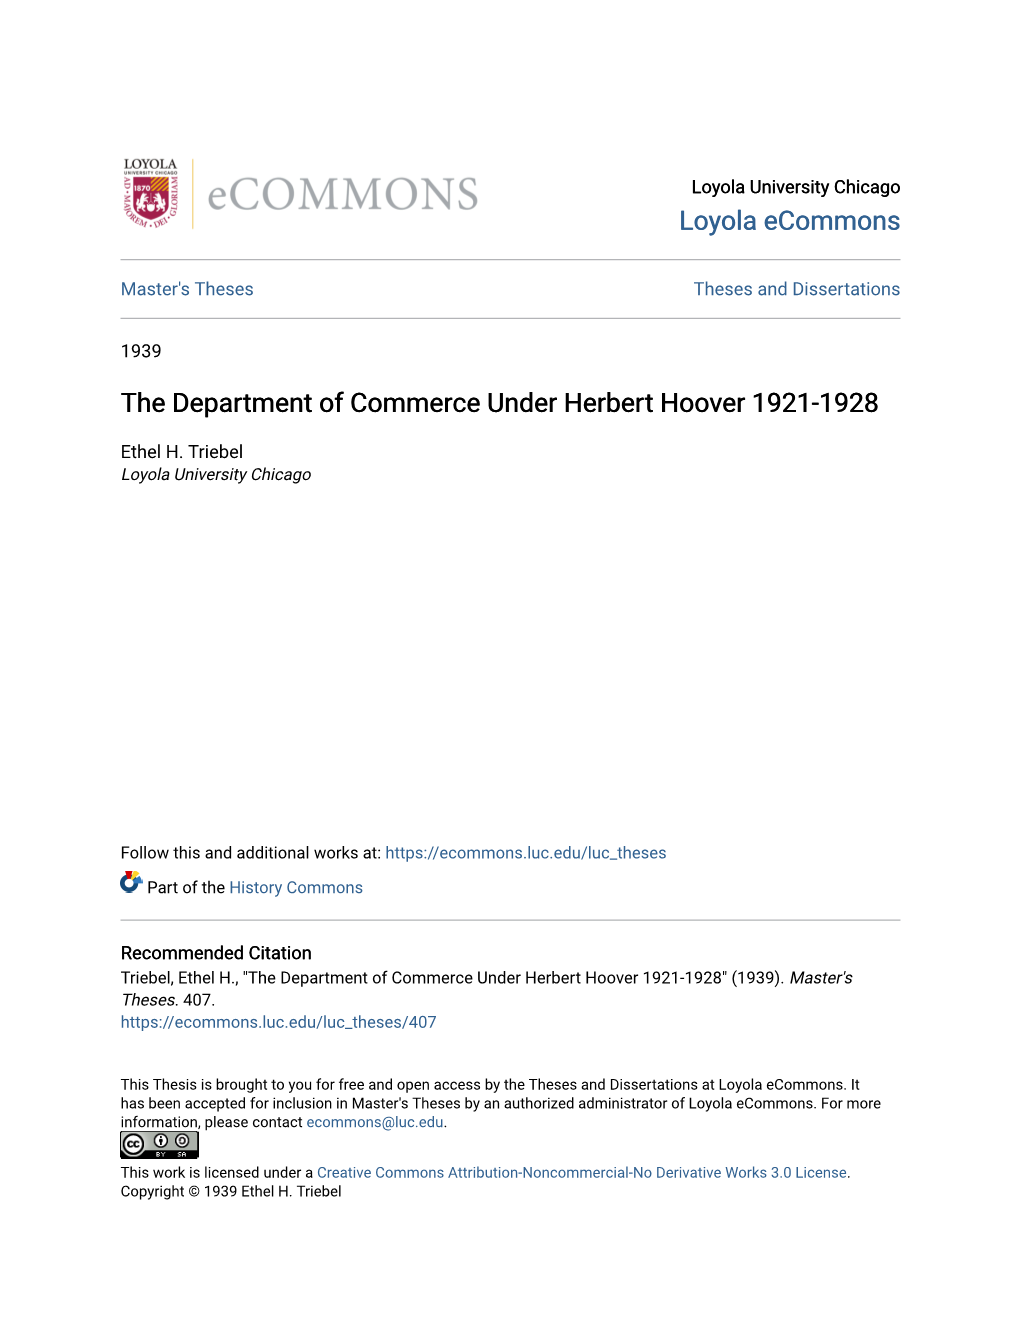 The Department of Commerce Under Herbert Hoover 1921-1928